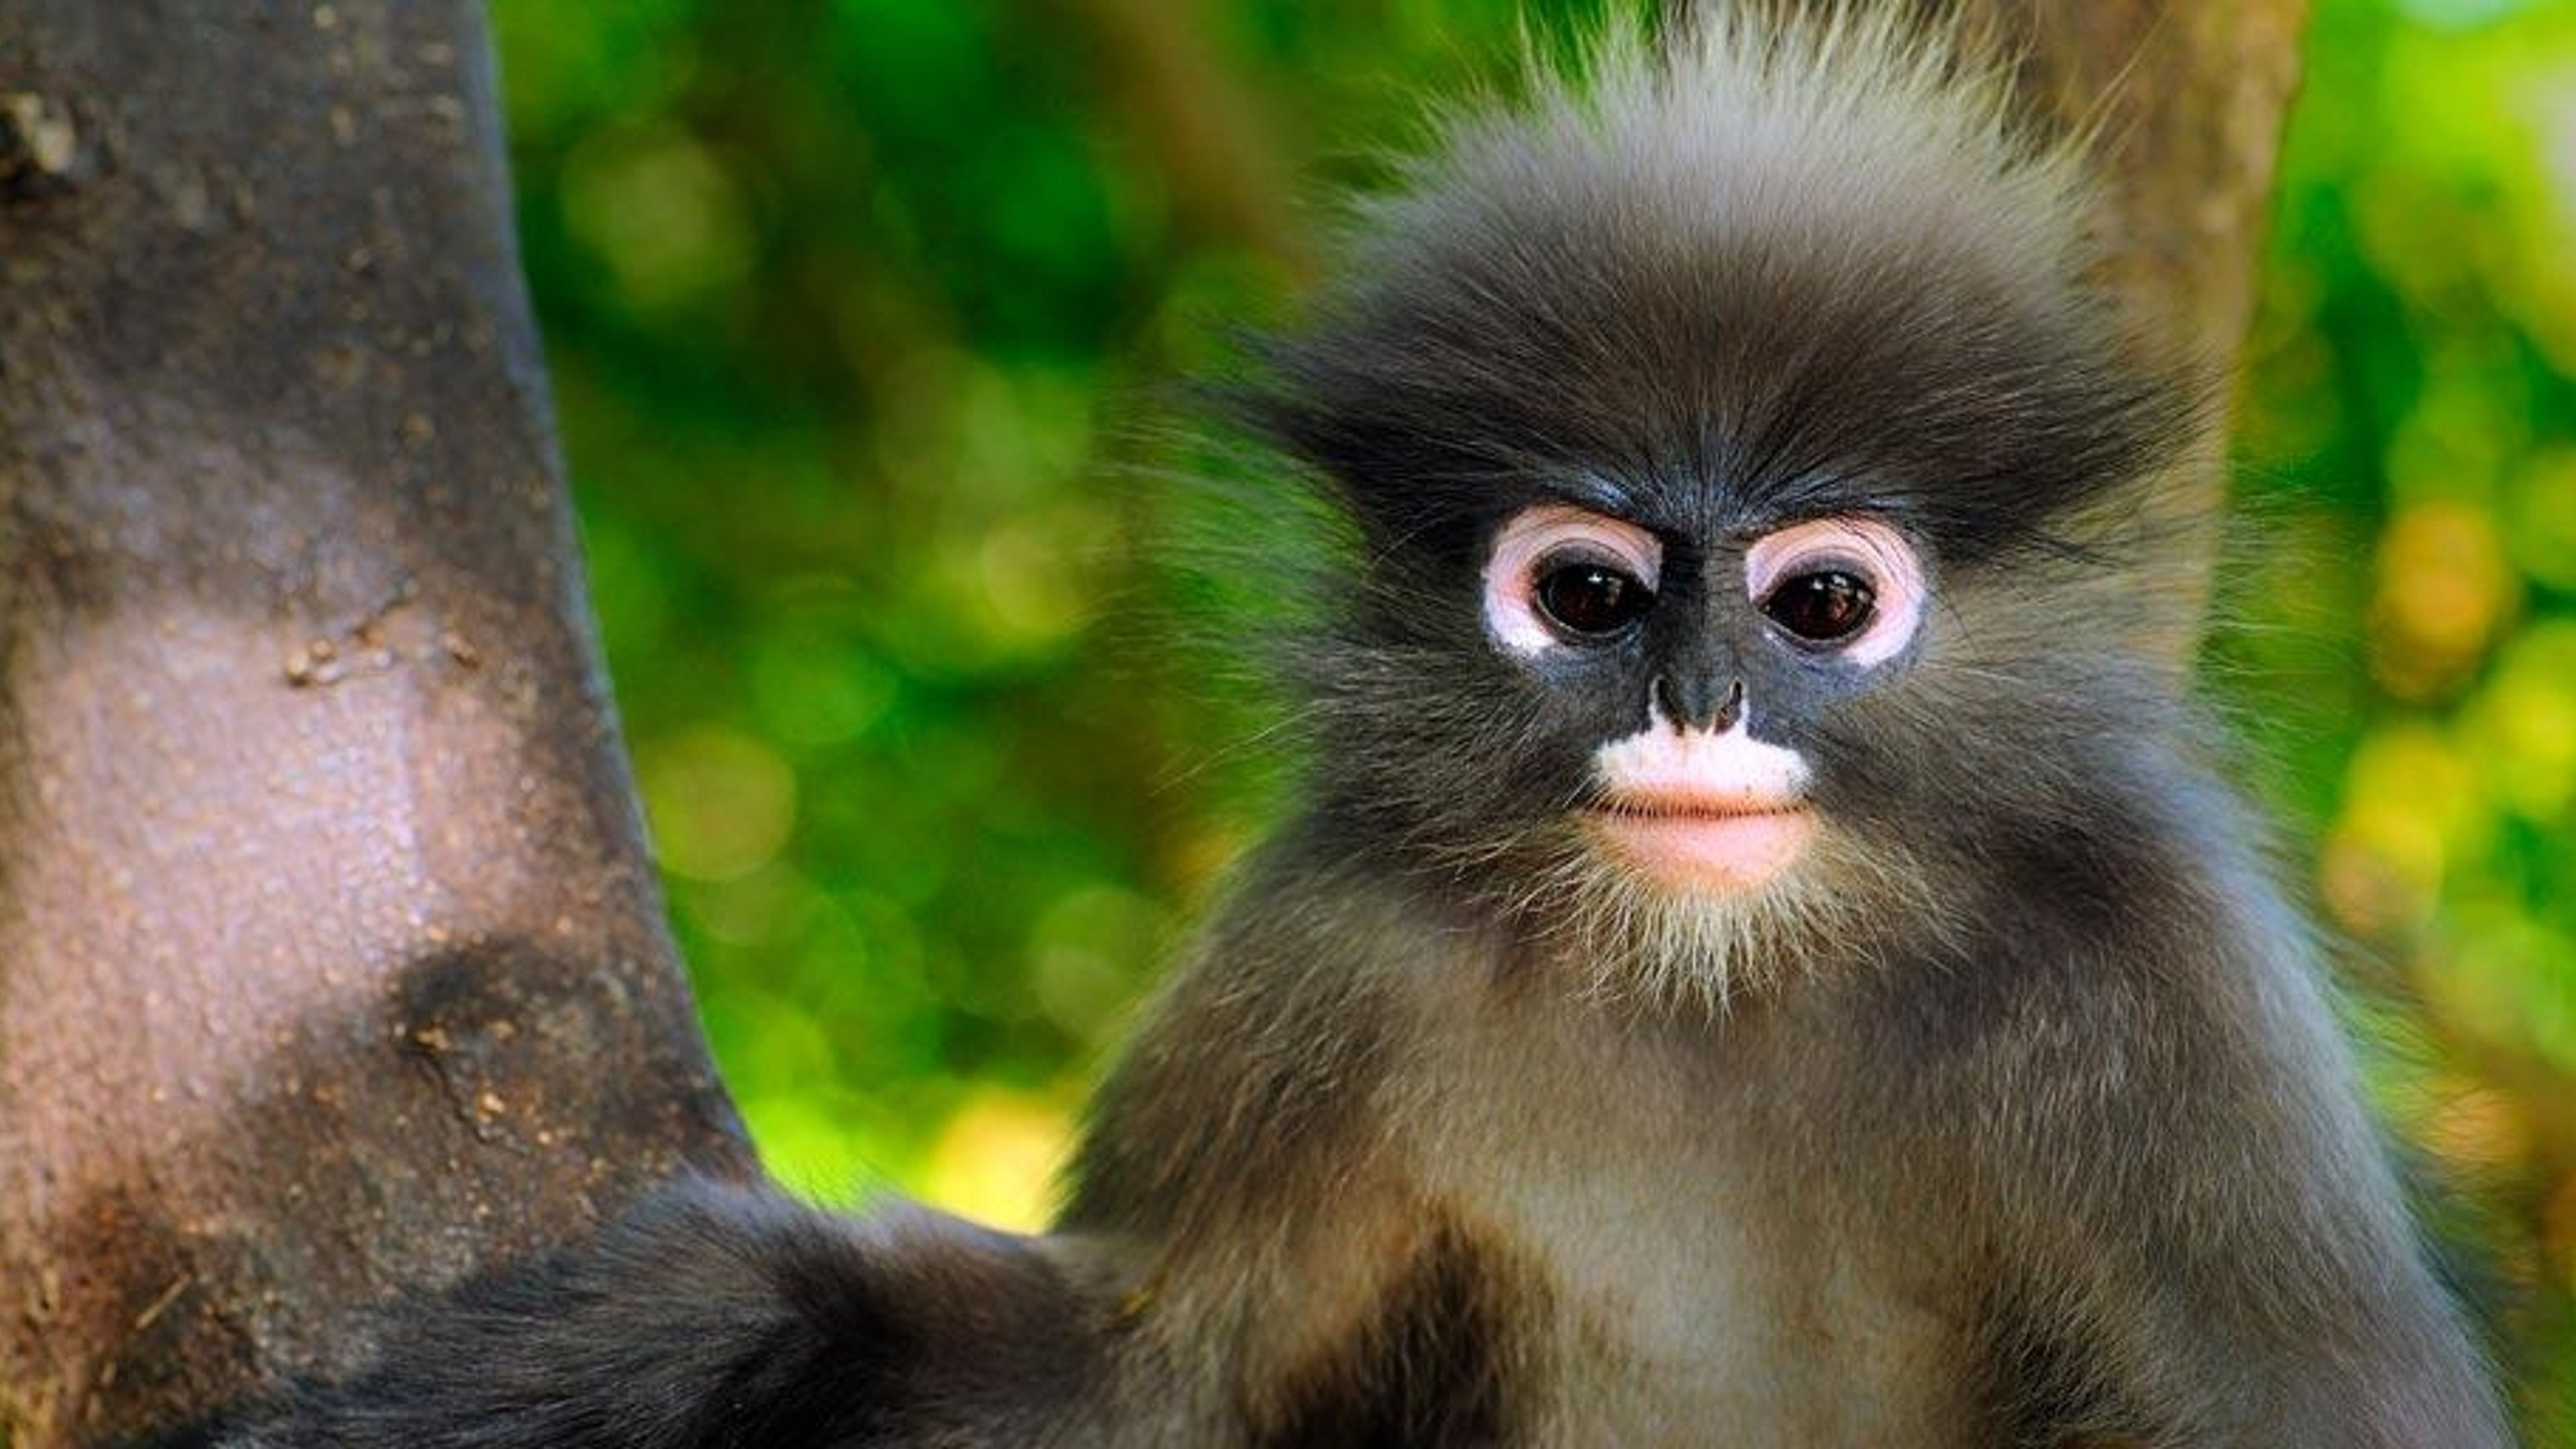 File:Dusky leaf monkey at Tanjung Tuan Recreational Forest.jpg